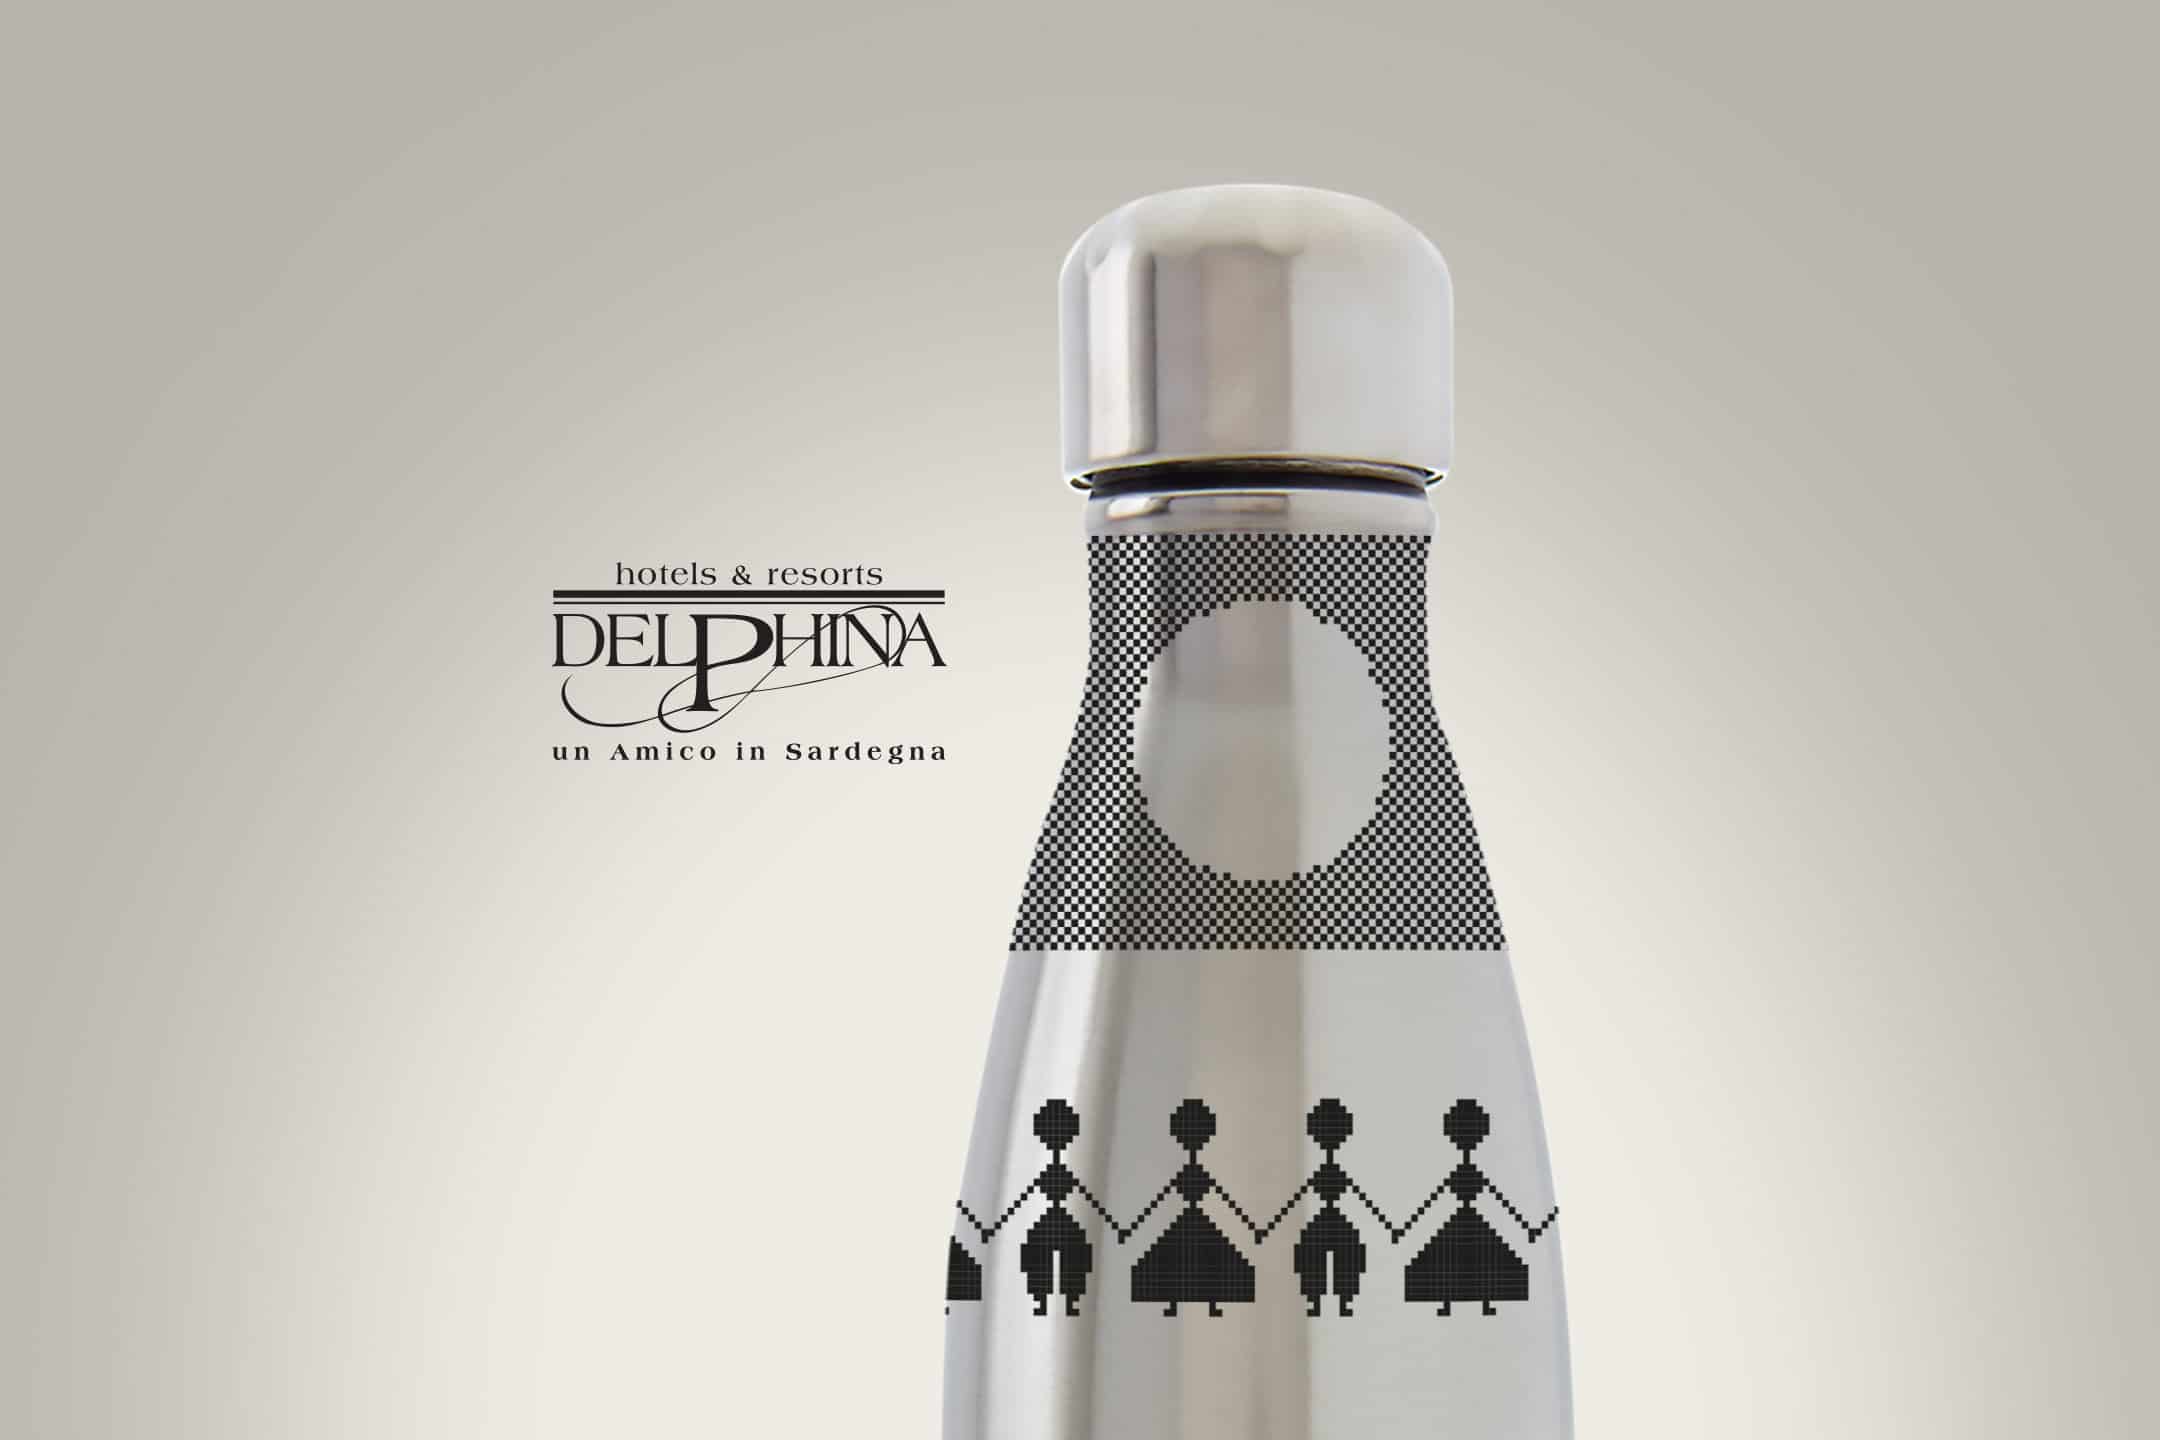 Delphina's bottle design